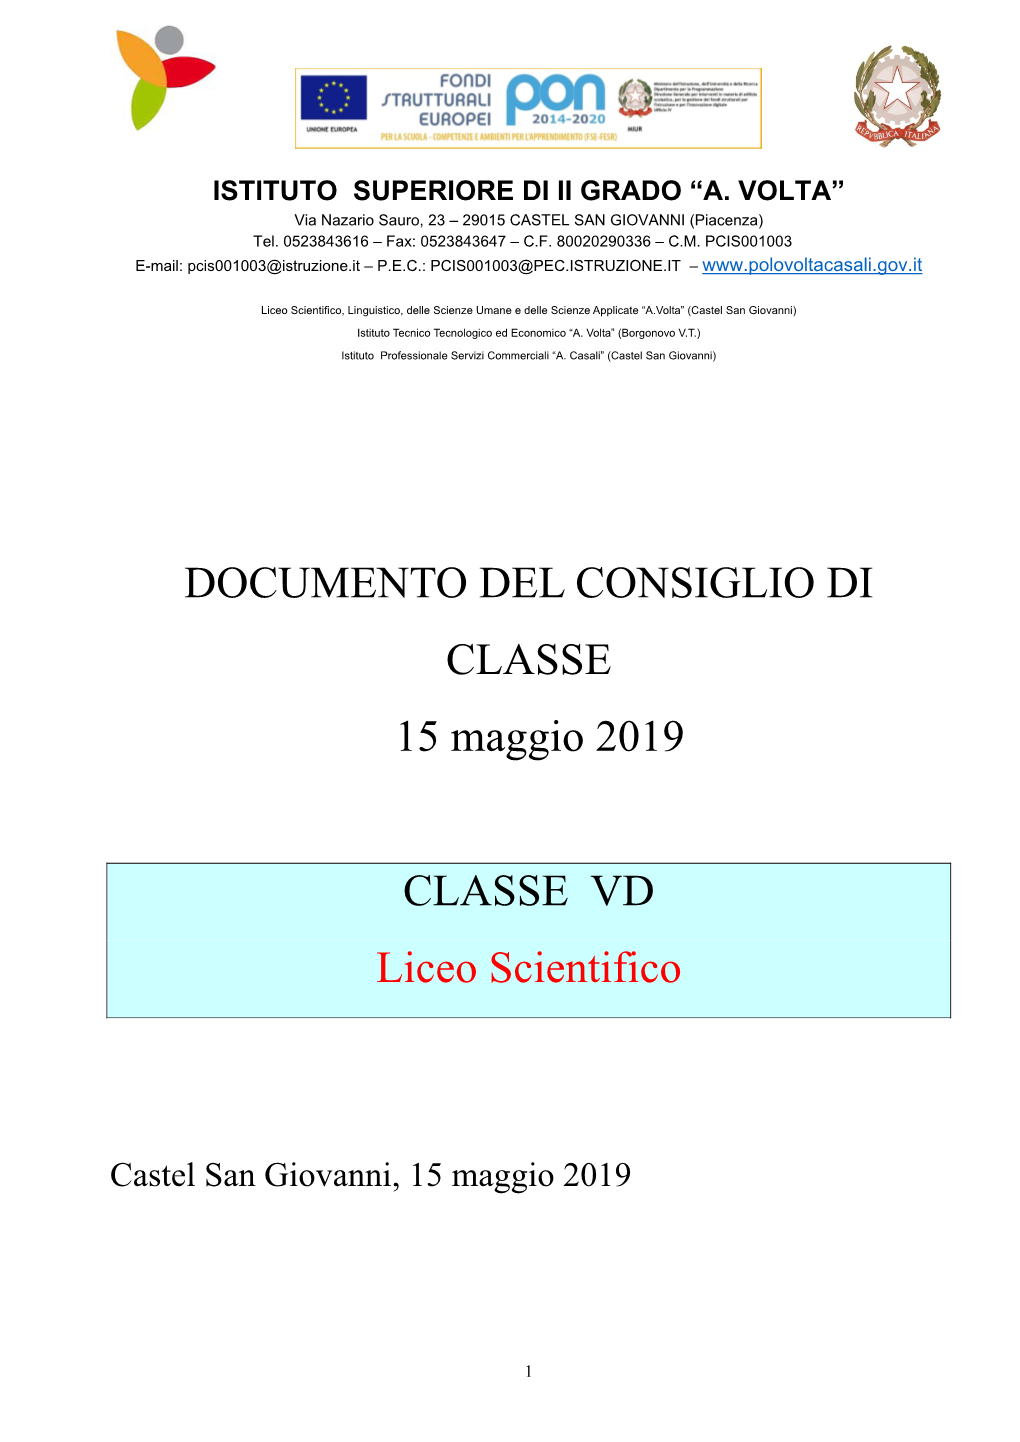 DOCUMENTO DEL CONSIGLIO DI CLASSE 15 Maggio 2019 CLASSE